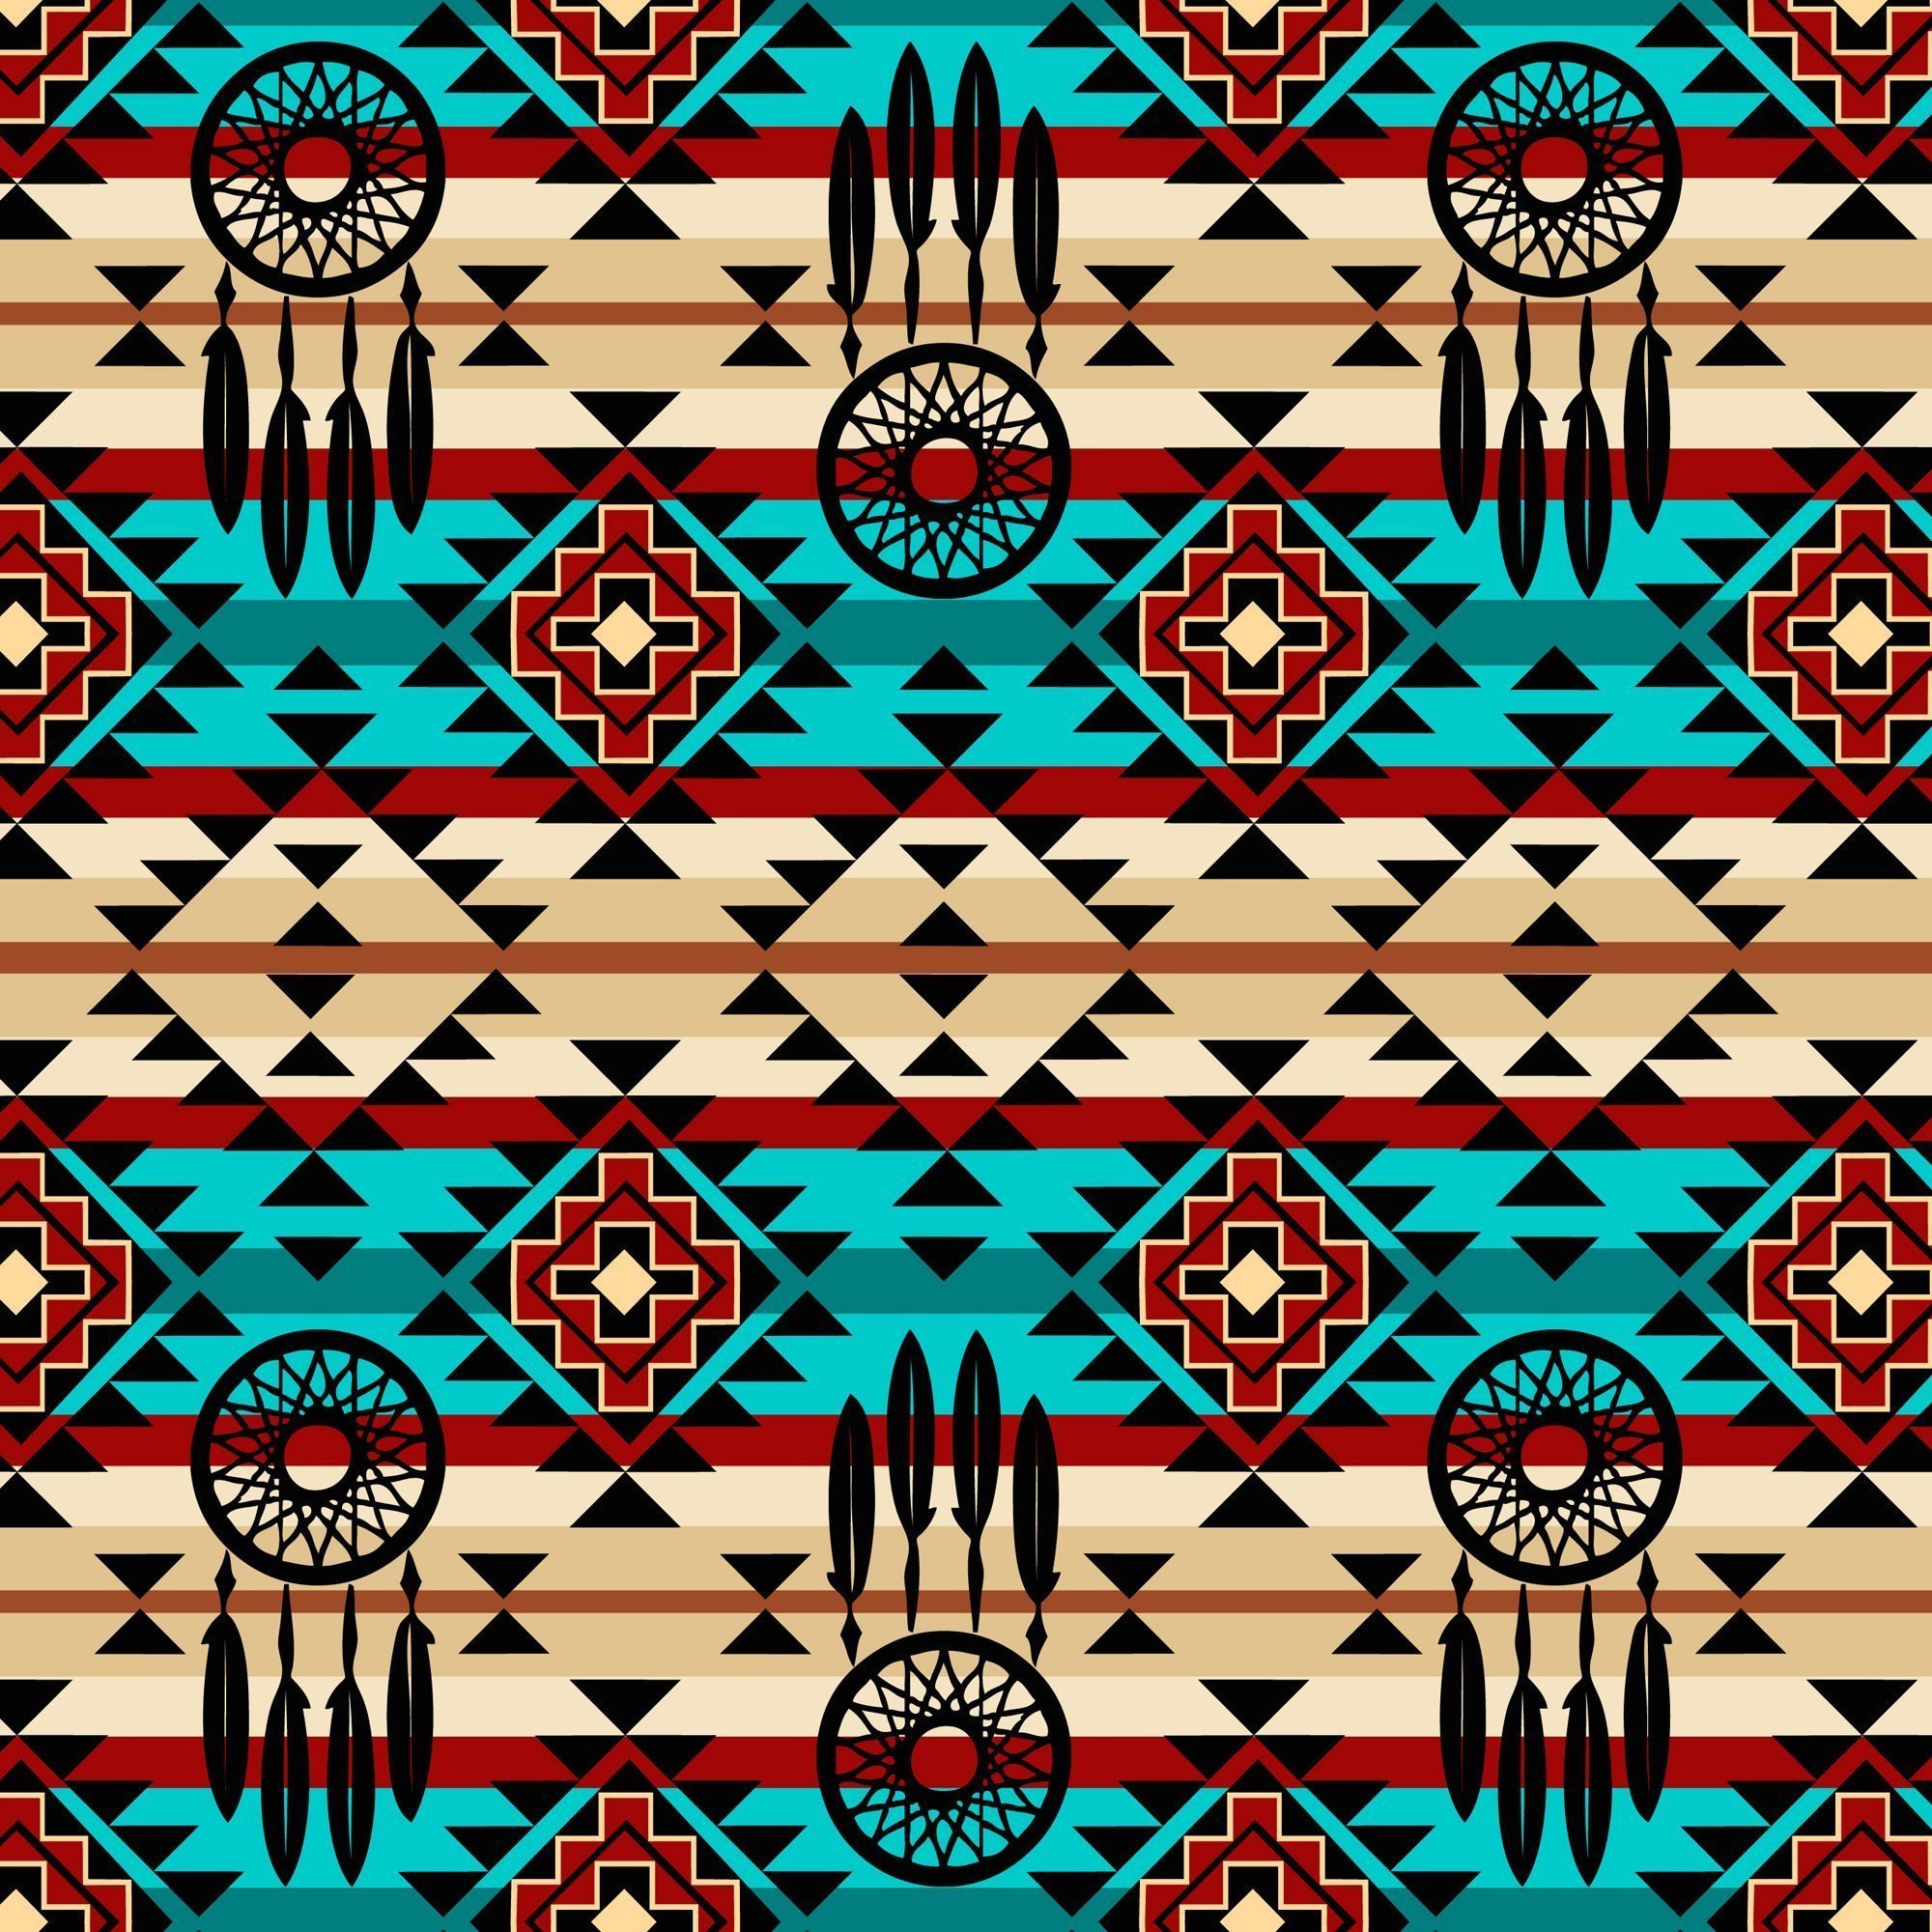 Этнические ткани. Индейцы Навахо орнамент узоры. Ткани орнамент индейцев Навахо. Орнамент индейцев Навахо. Орнаменты североамериканских индейцев Навахо.